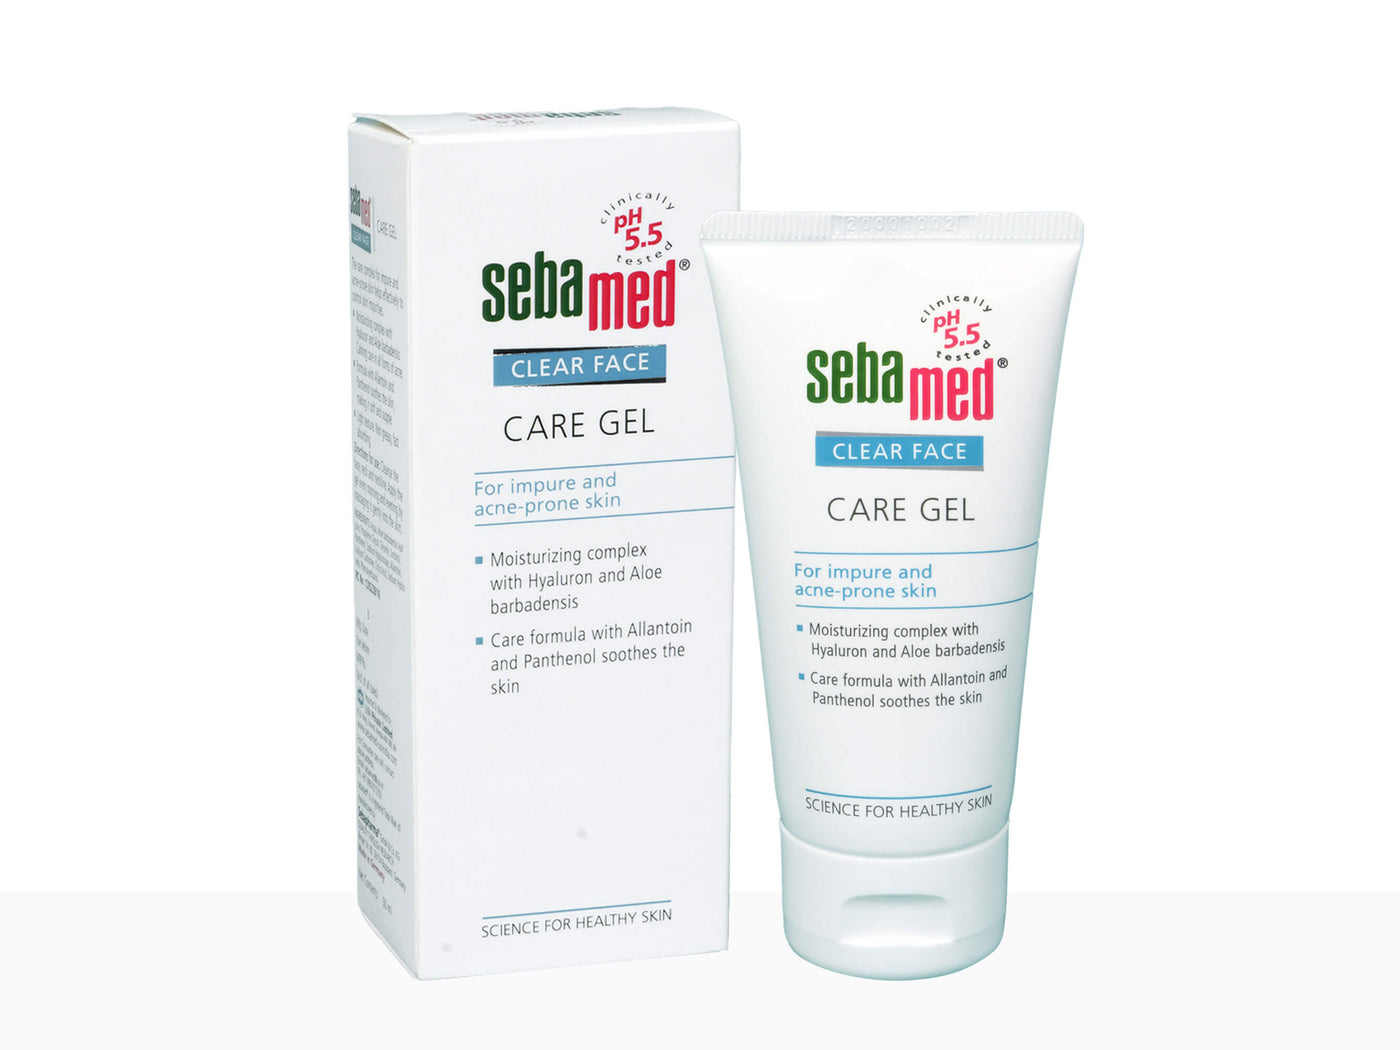 Sebamed clear face care gel - Clinikally